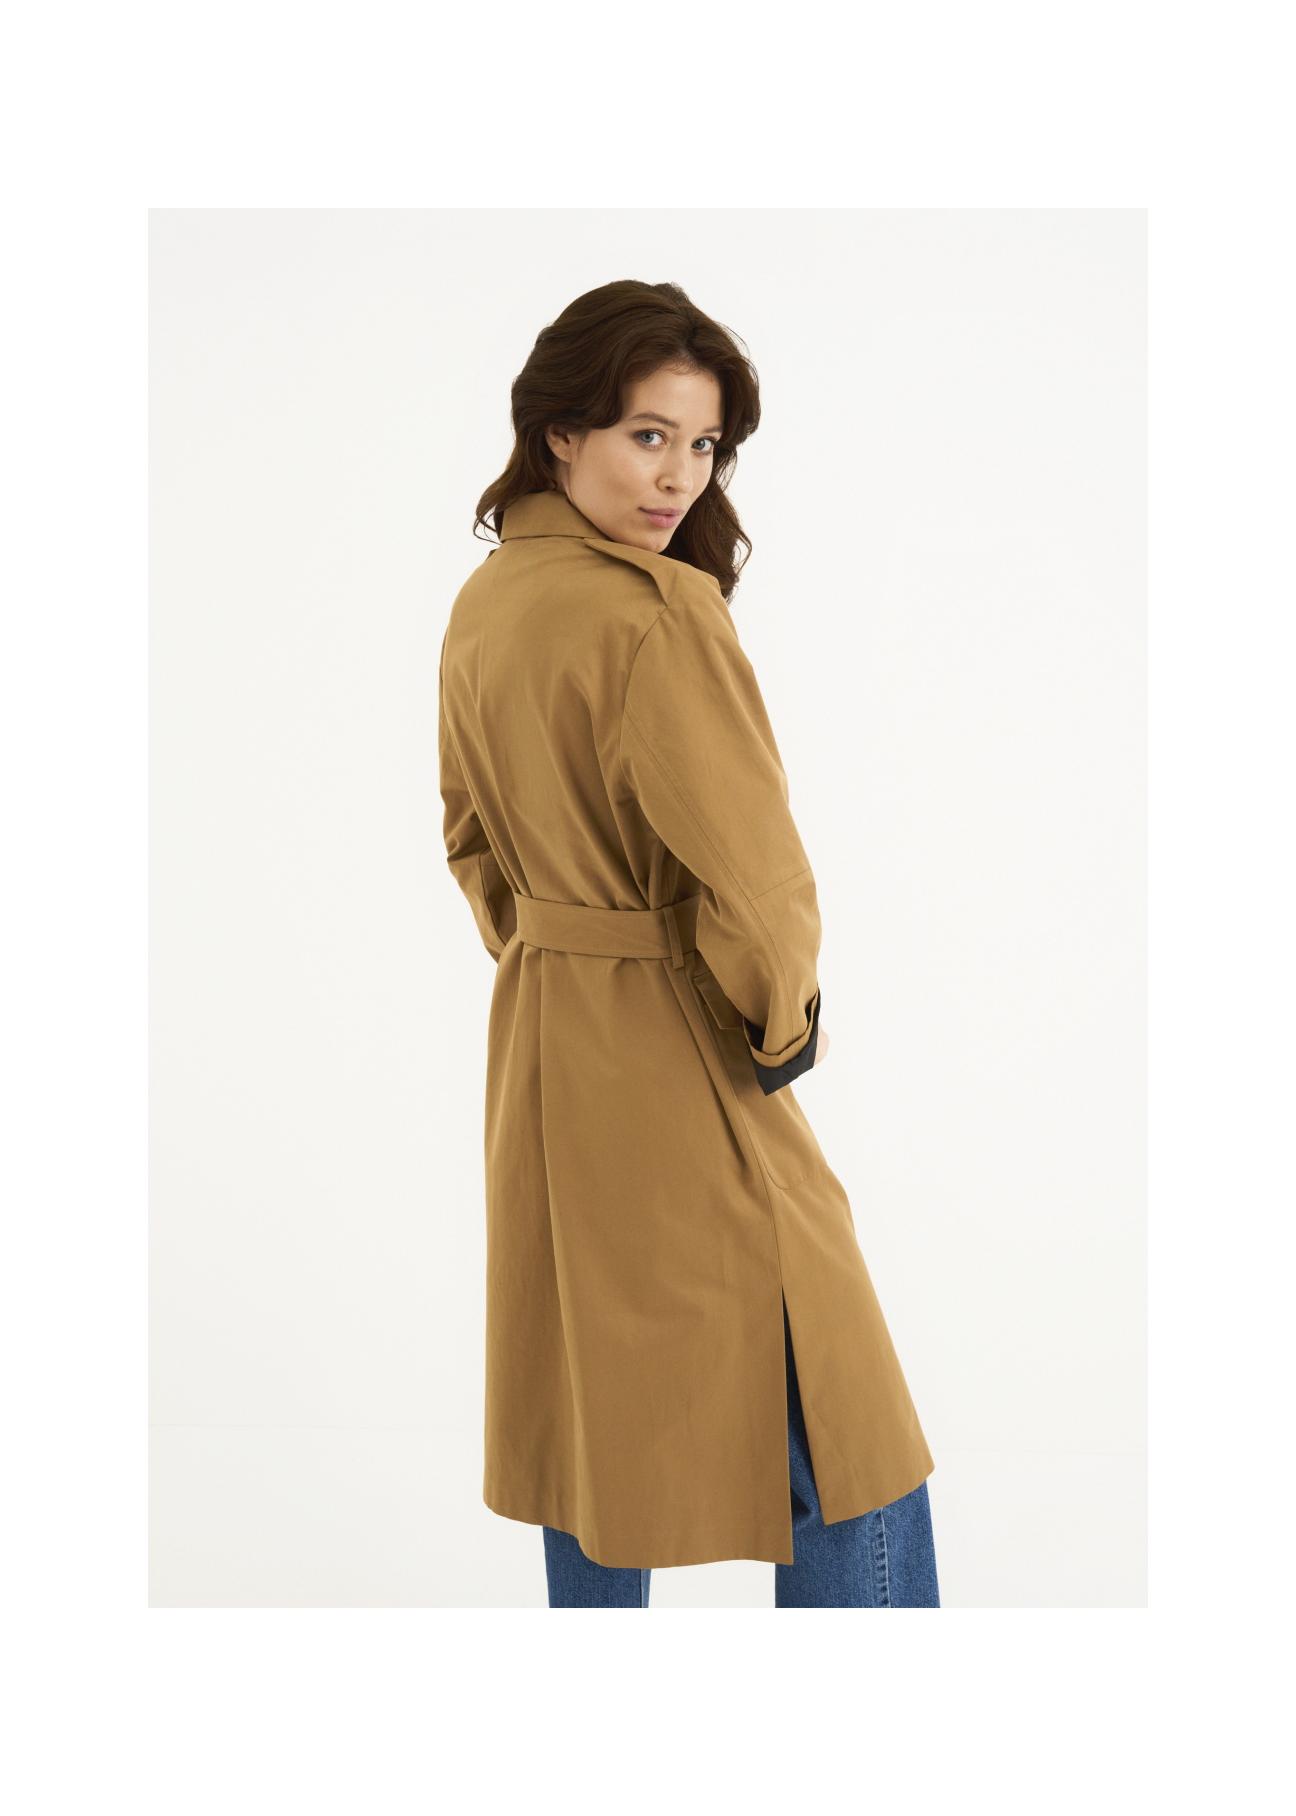 Miodowy płaszcz damski z paskiem KURDT-0357-81(W22)